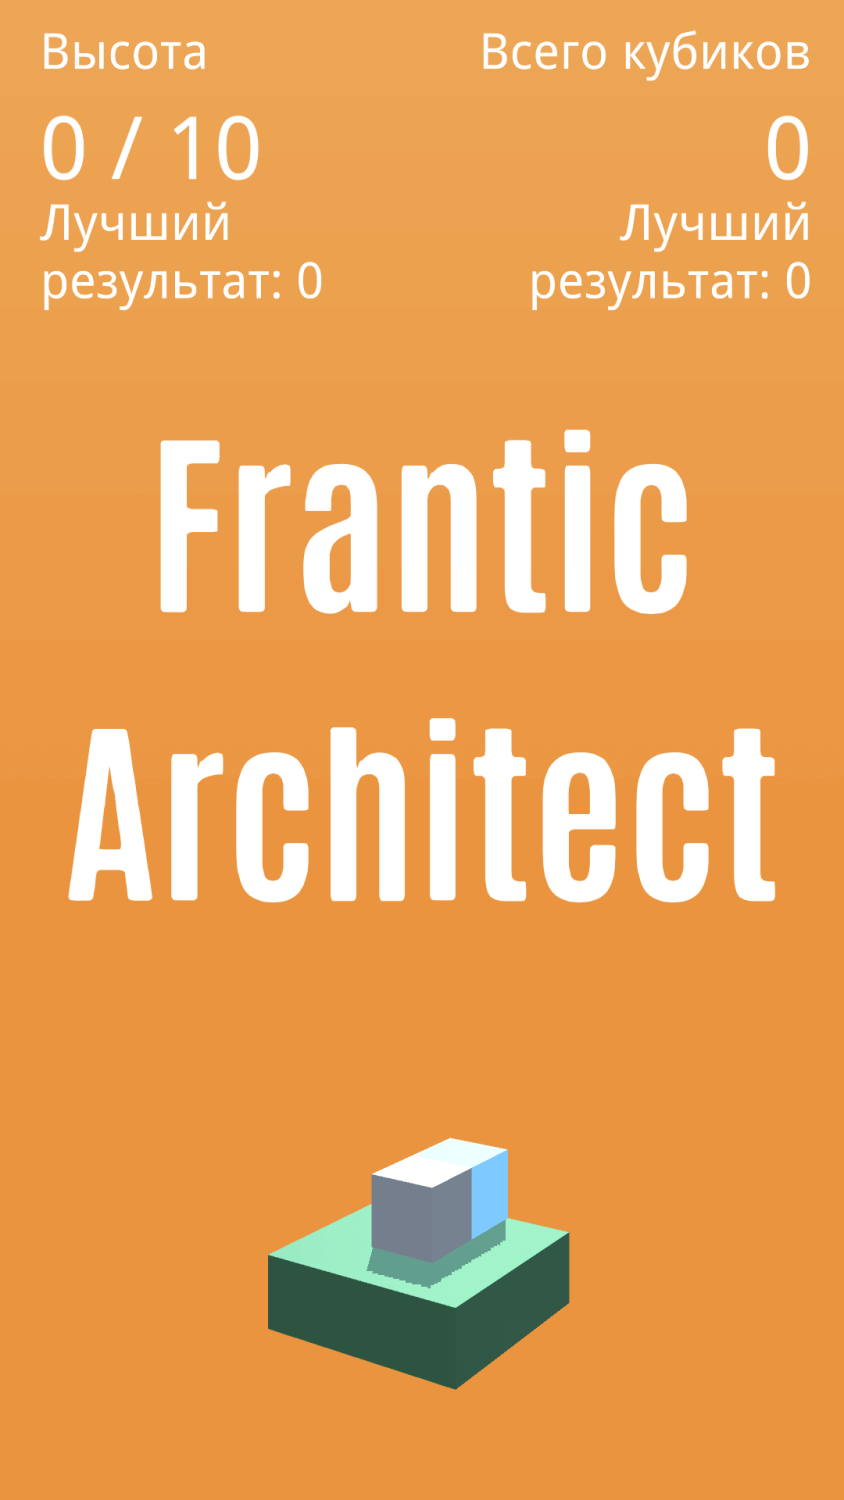 Frantic Architect — построить башню сможет только самый быстрый. Фото.